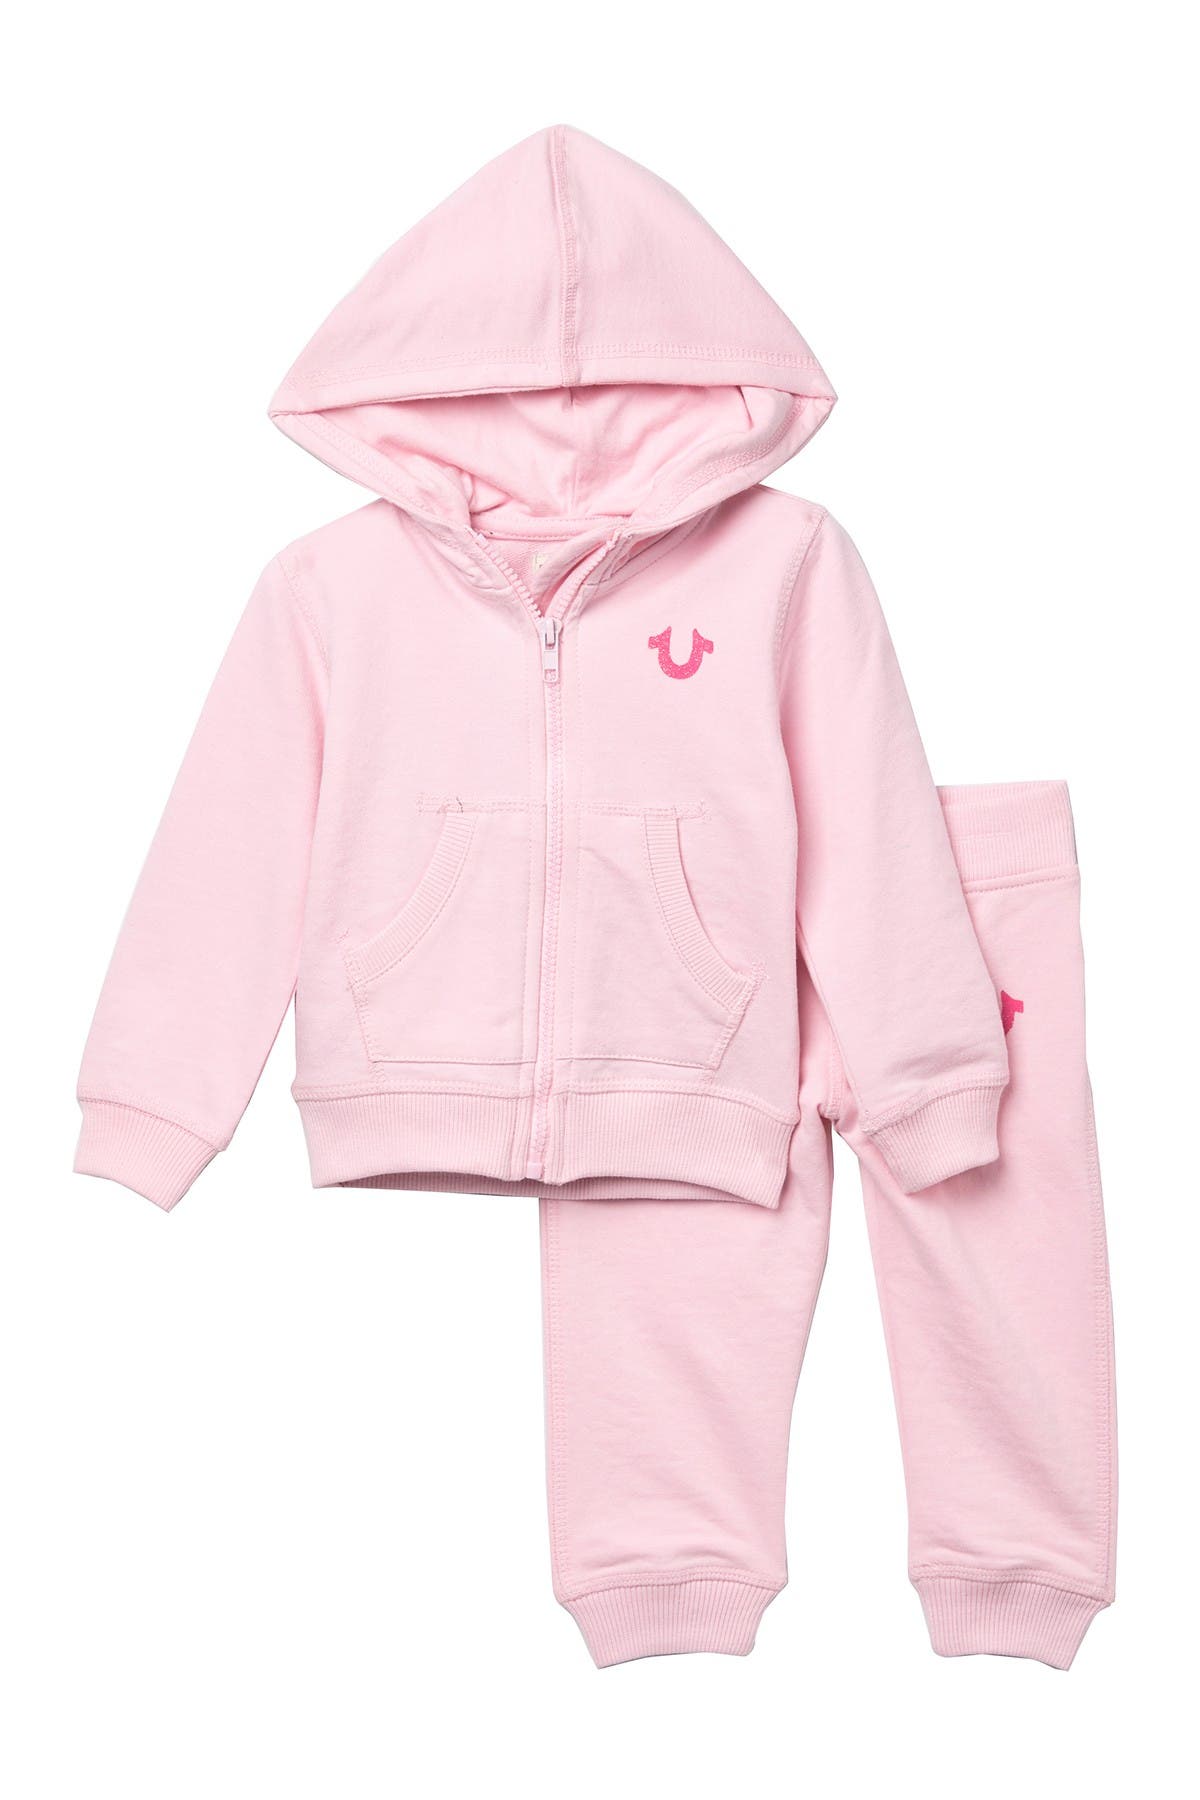 true religion hoodie pink